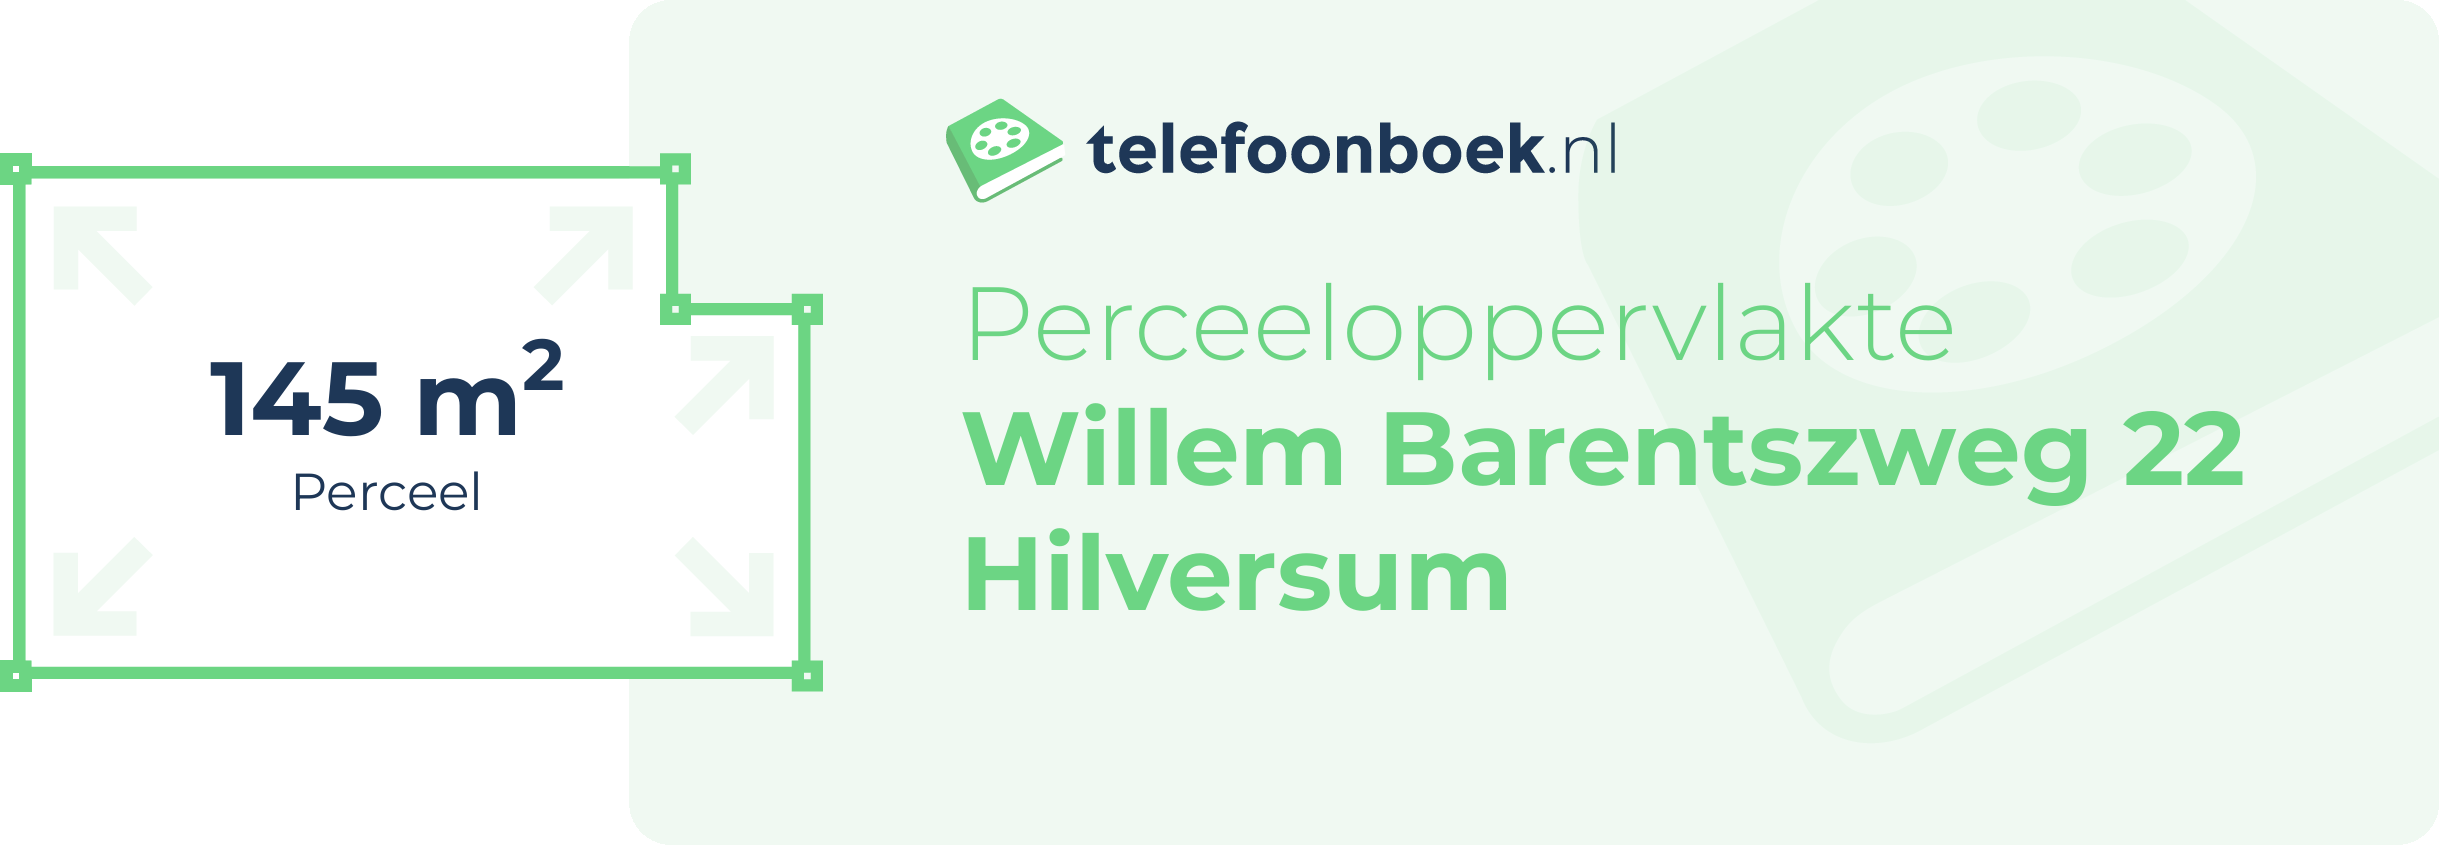 Perceeloppervlakte Willem Barentszweg 22 Hilversum